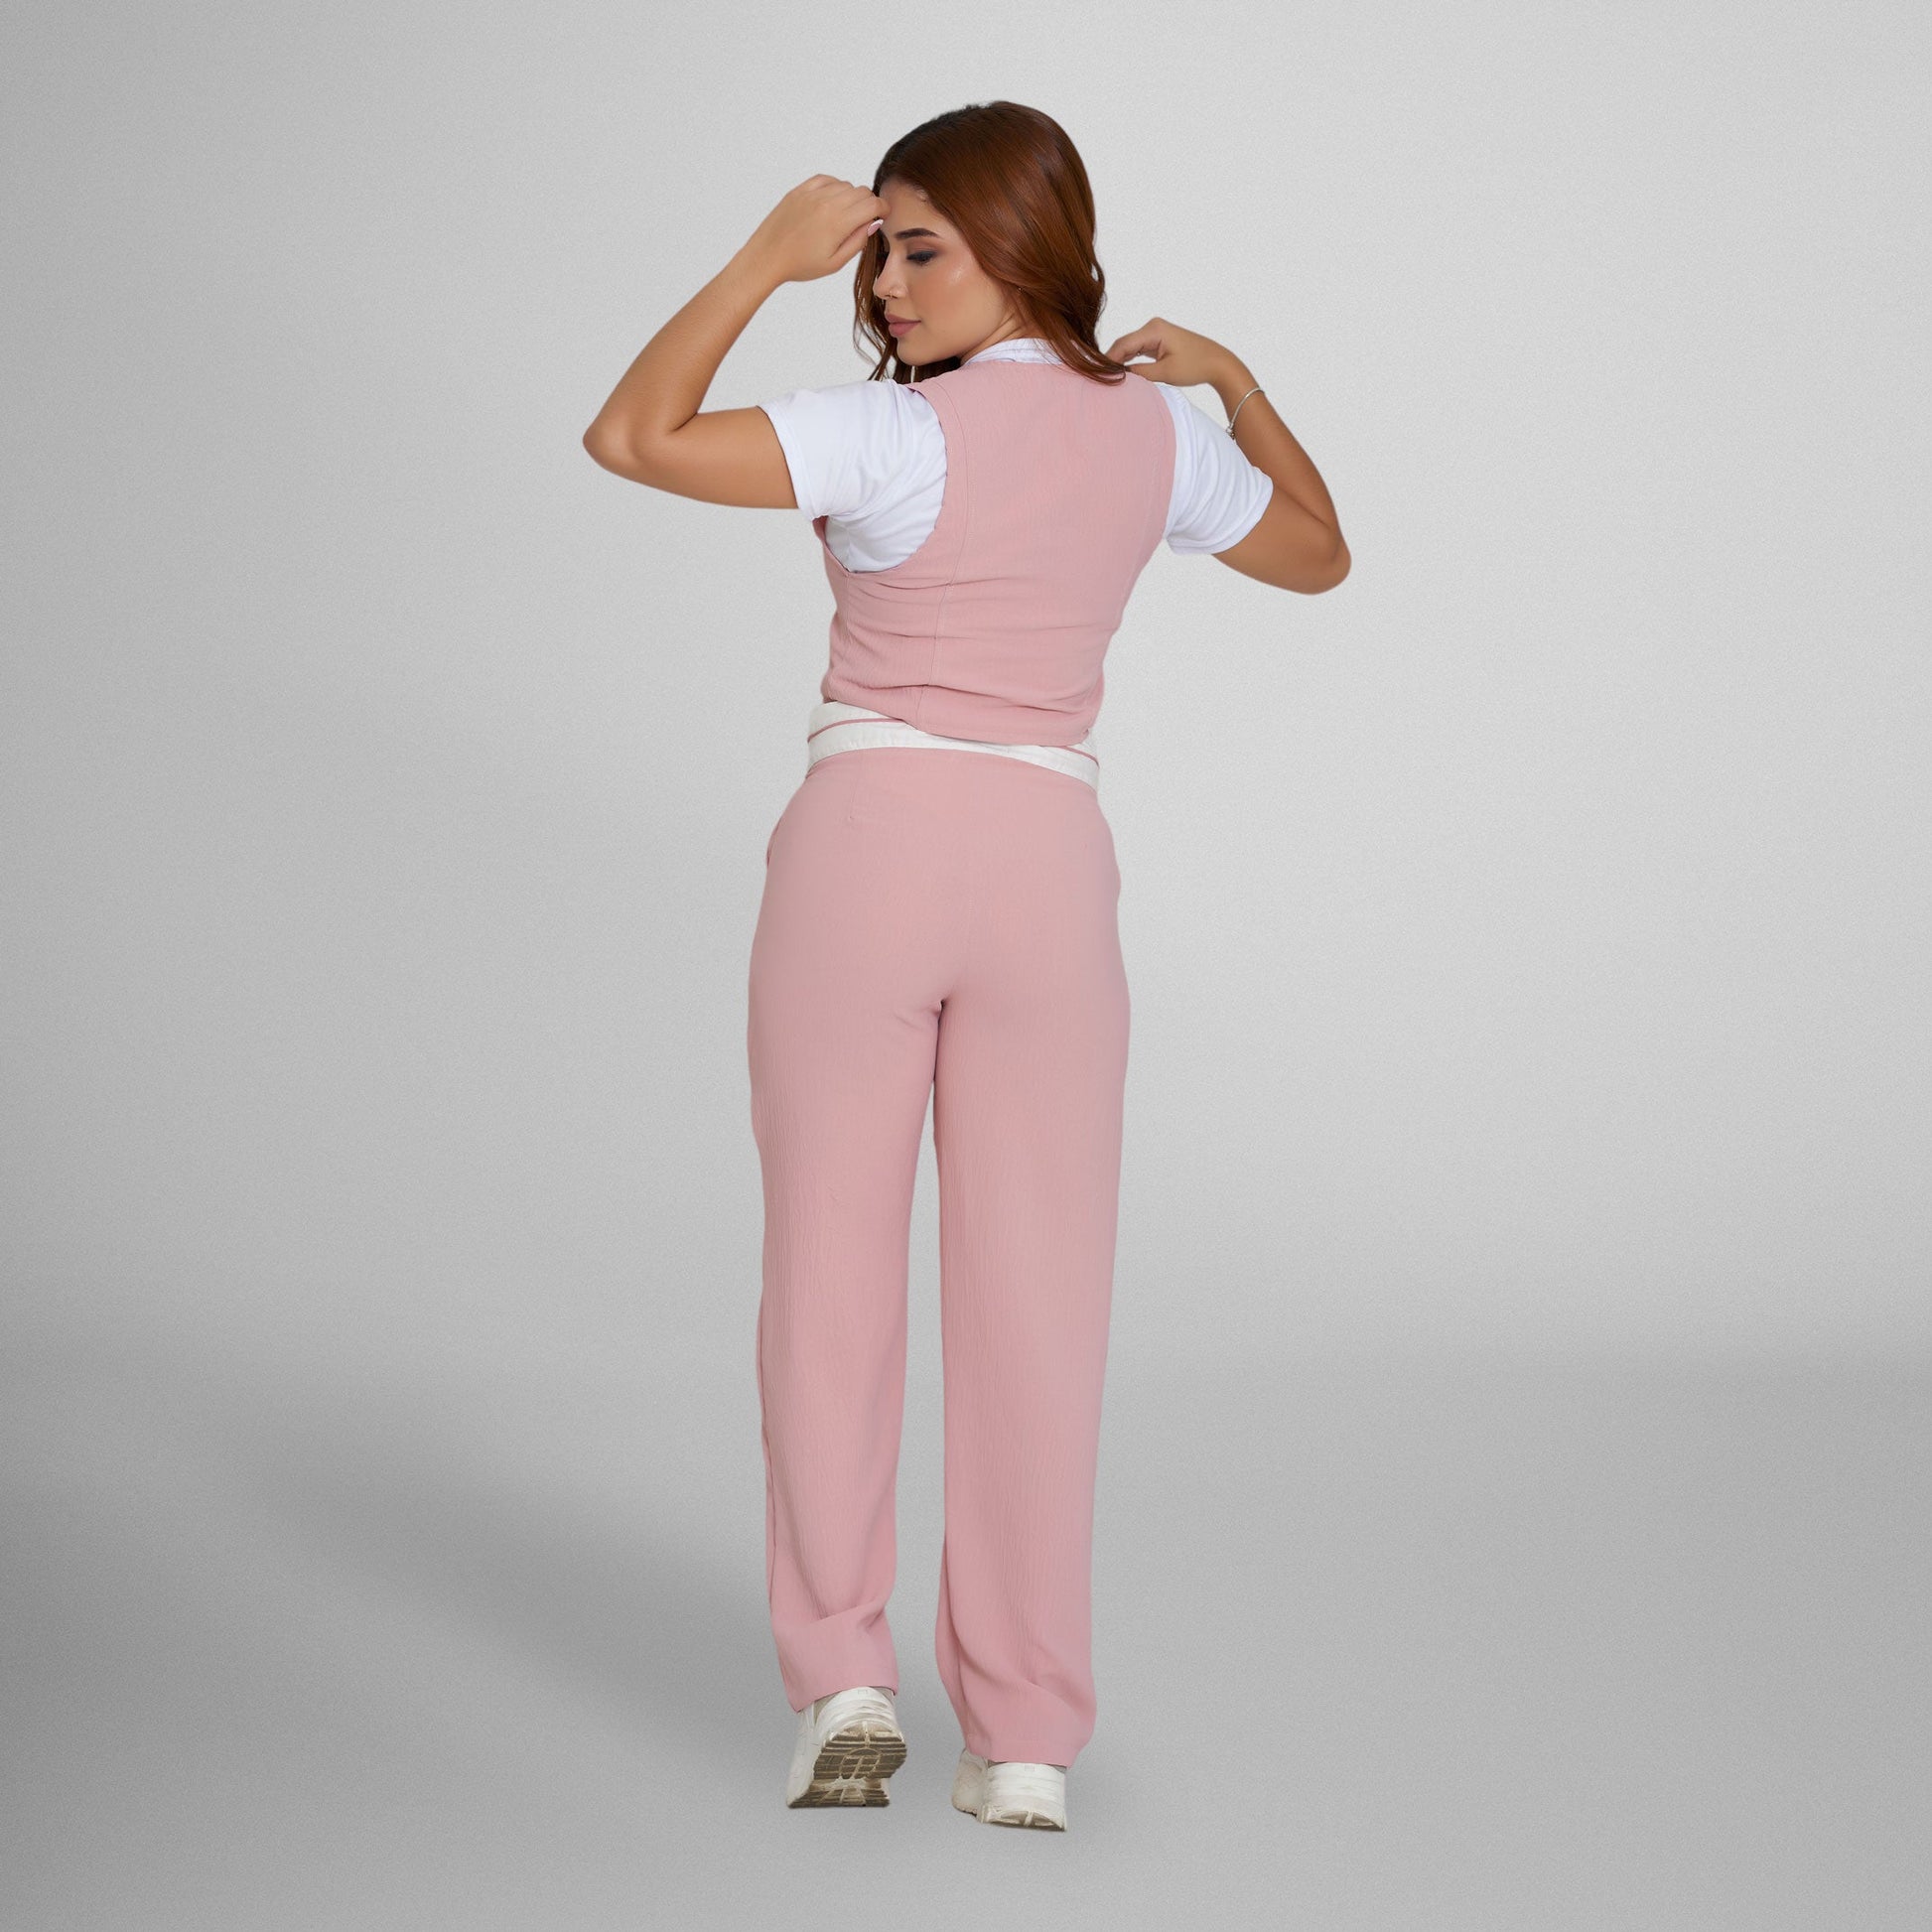 Chaleco Lino rosa – Generación Cuarenta - Tienda online ropa mujer